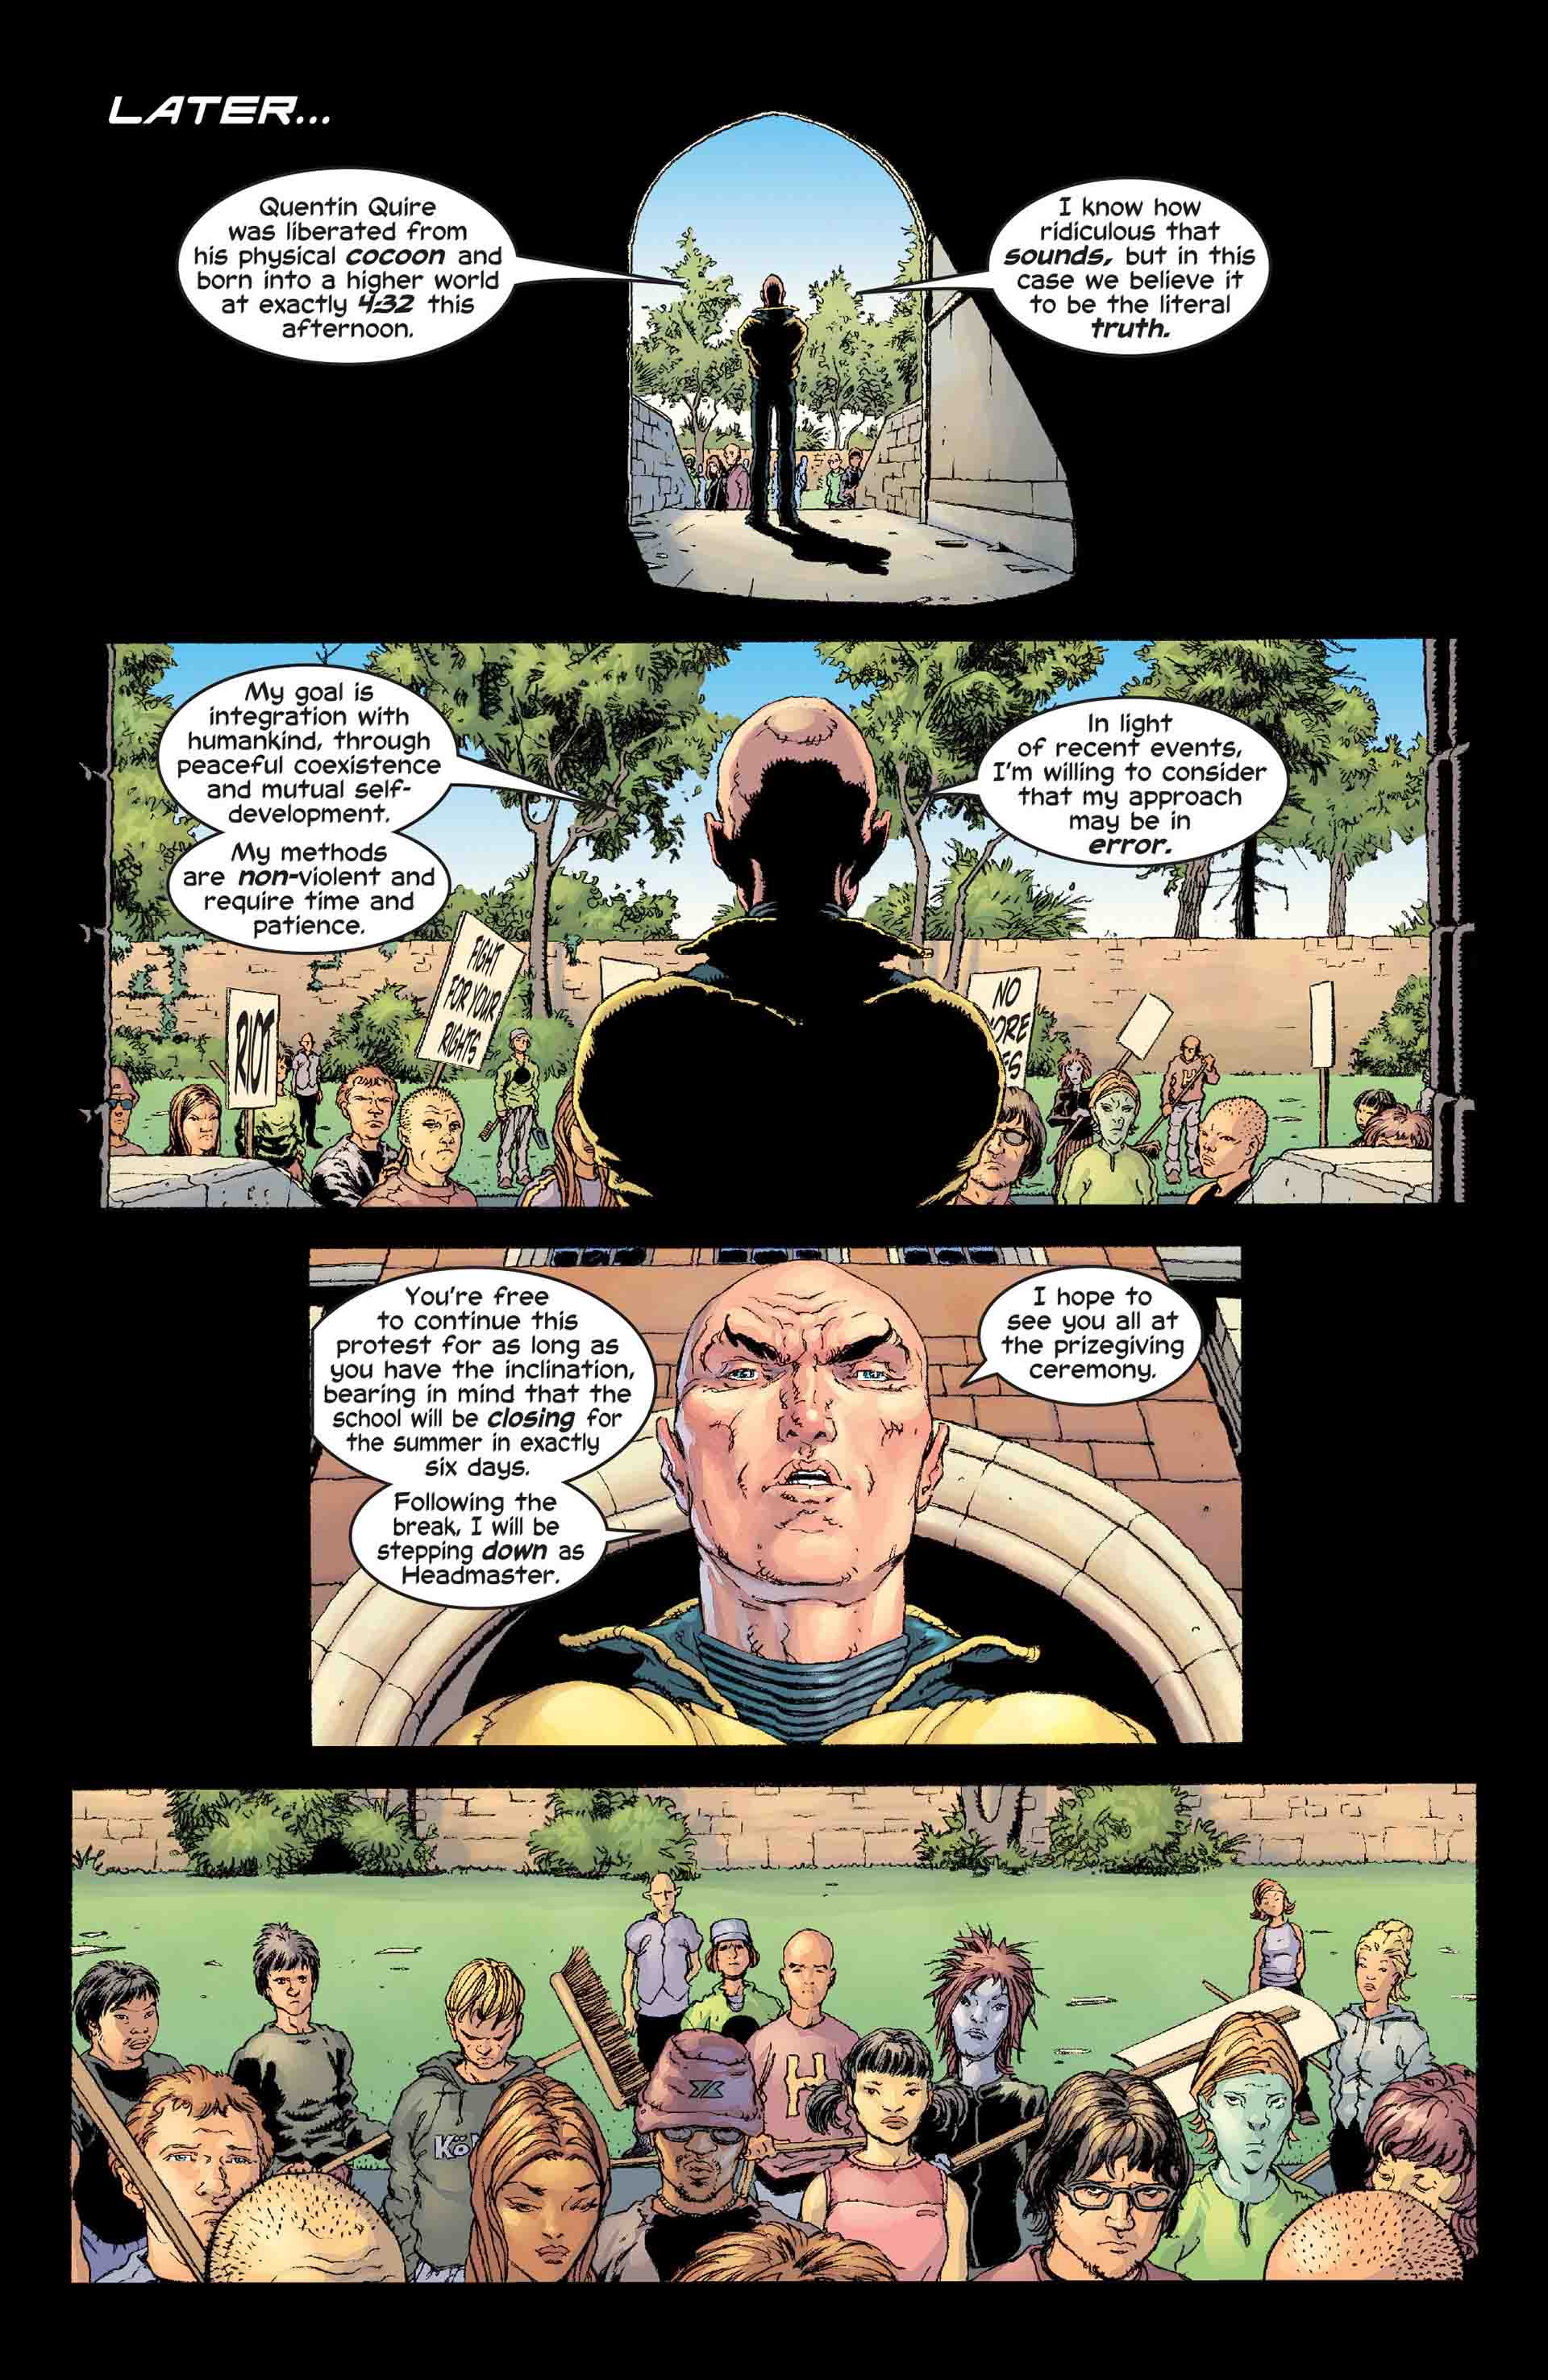 بهبودی ستون فقرات چارلز اگزاویر در سری New X-Men